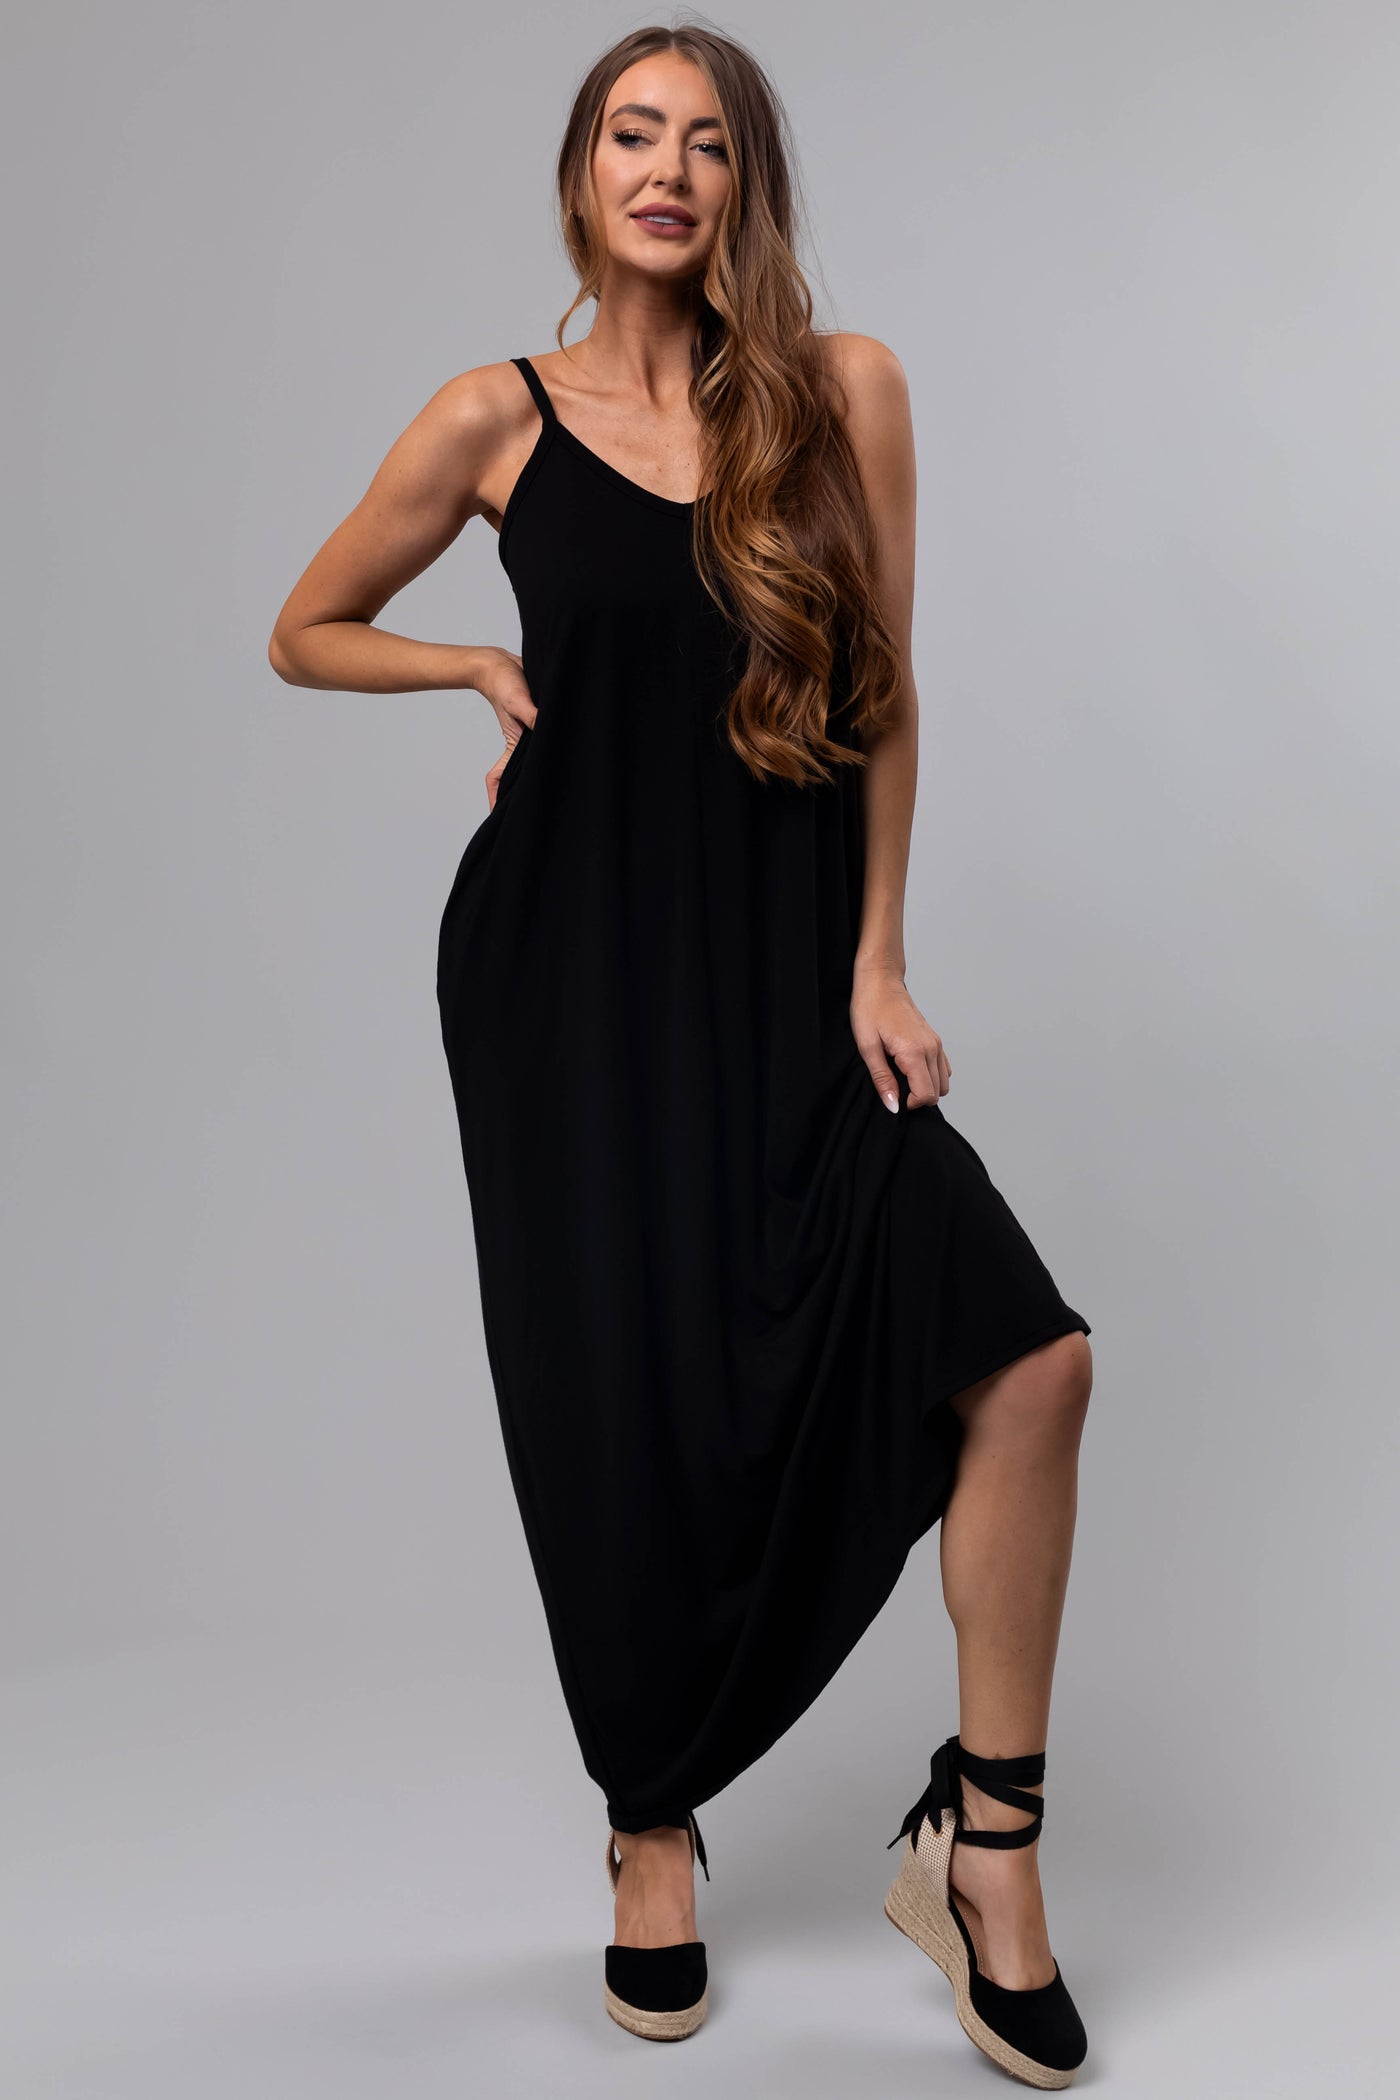 Black Sleeveless Knit Maxi Dress with Pockets